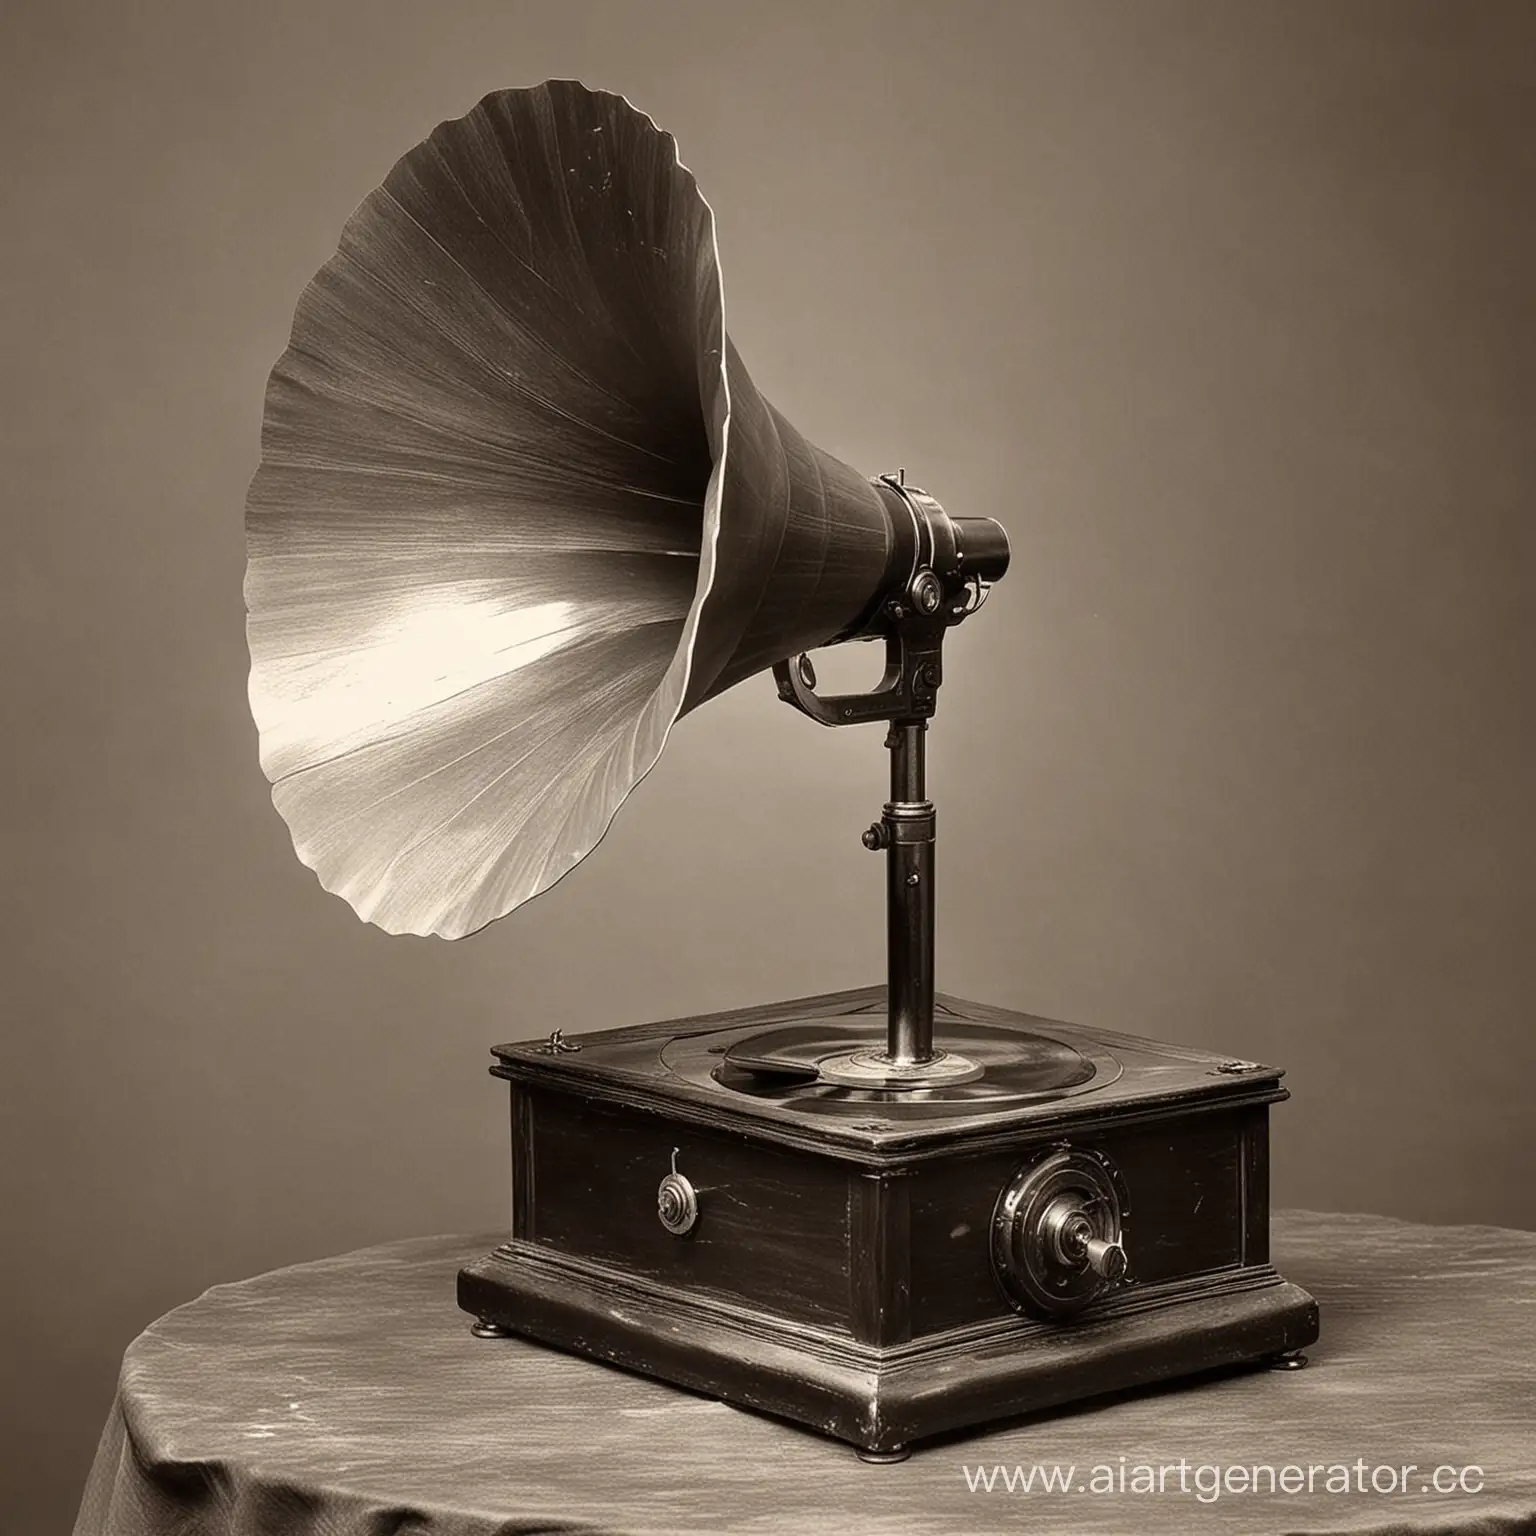 Фоноавтограф- первое в мире звукозаписывающее устройство. Изобретен в 1857 году Эдуаром Леоном Скоттом де Мартенвилем.